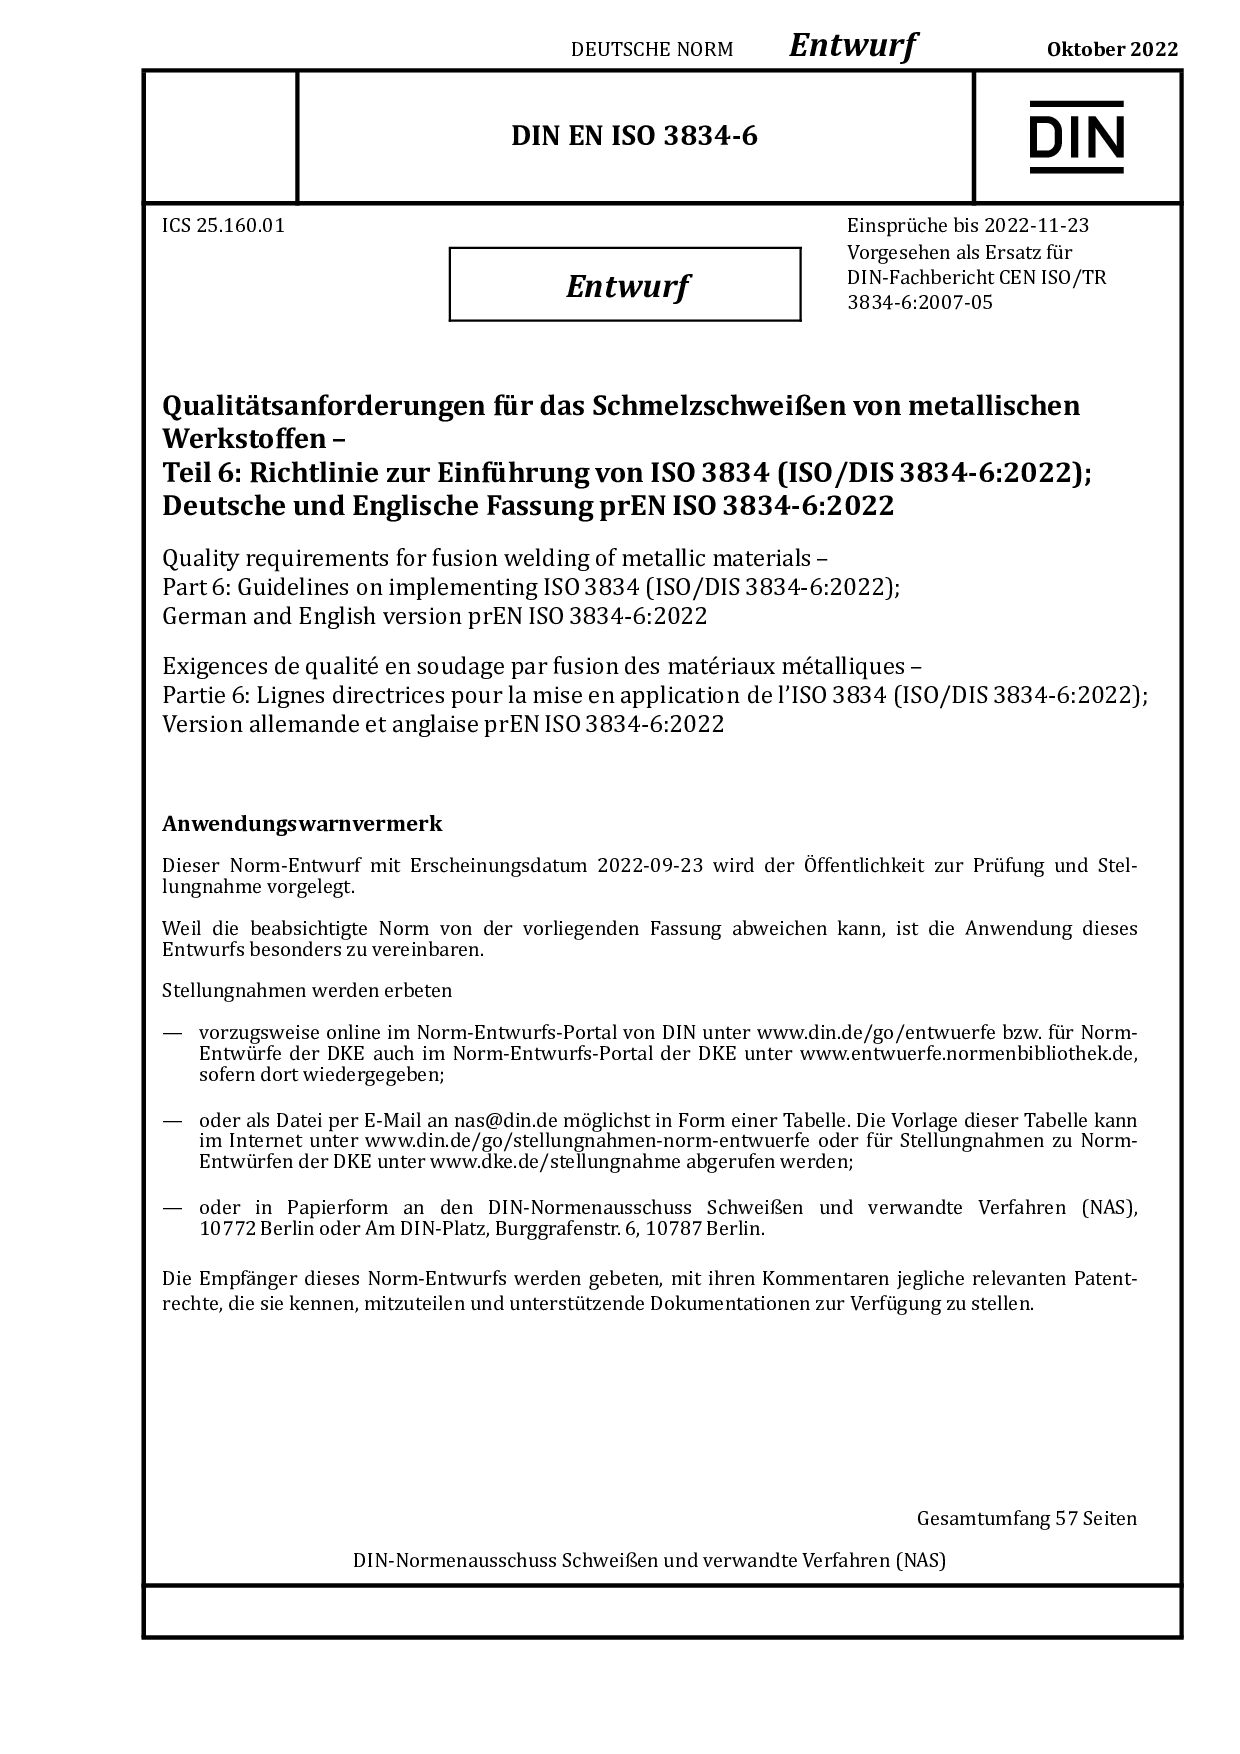 DIN EN ISO 3834-6:2022-10